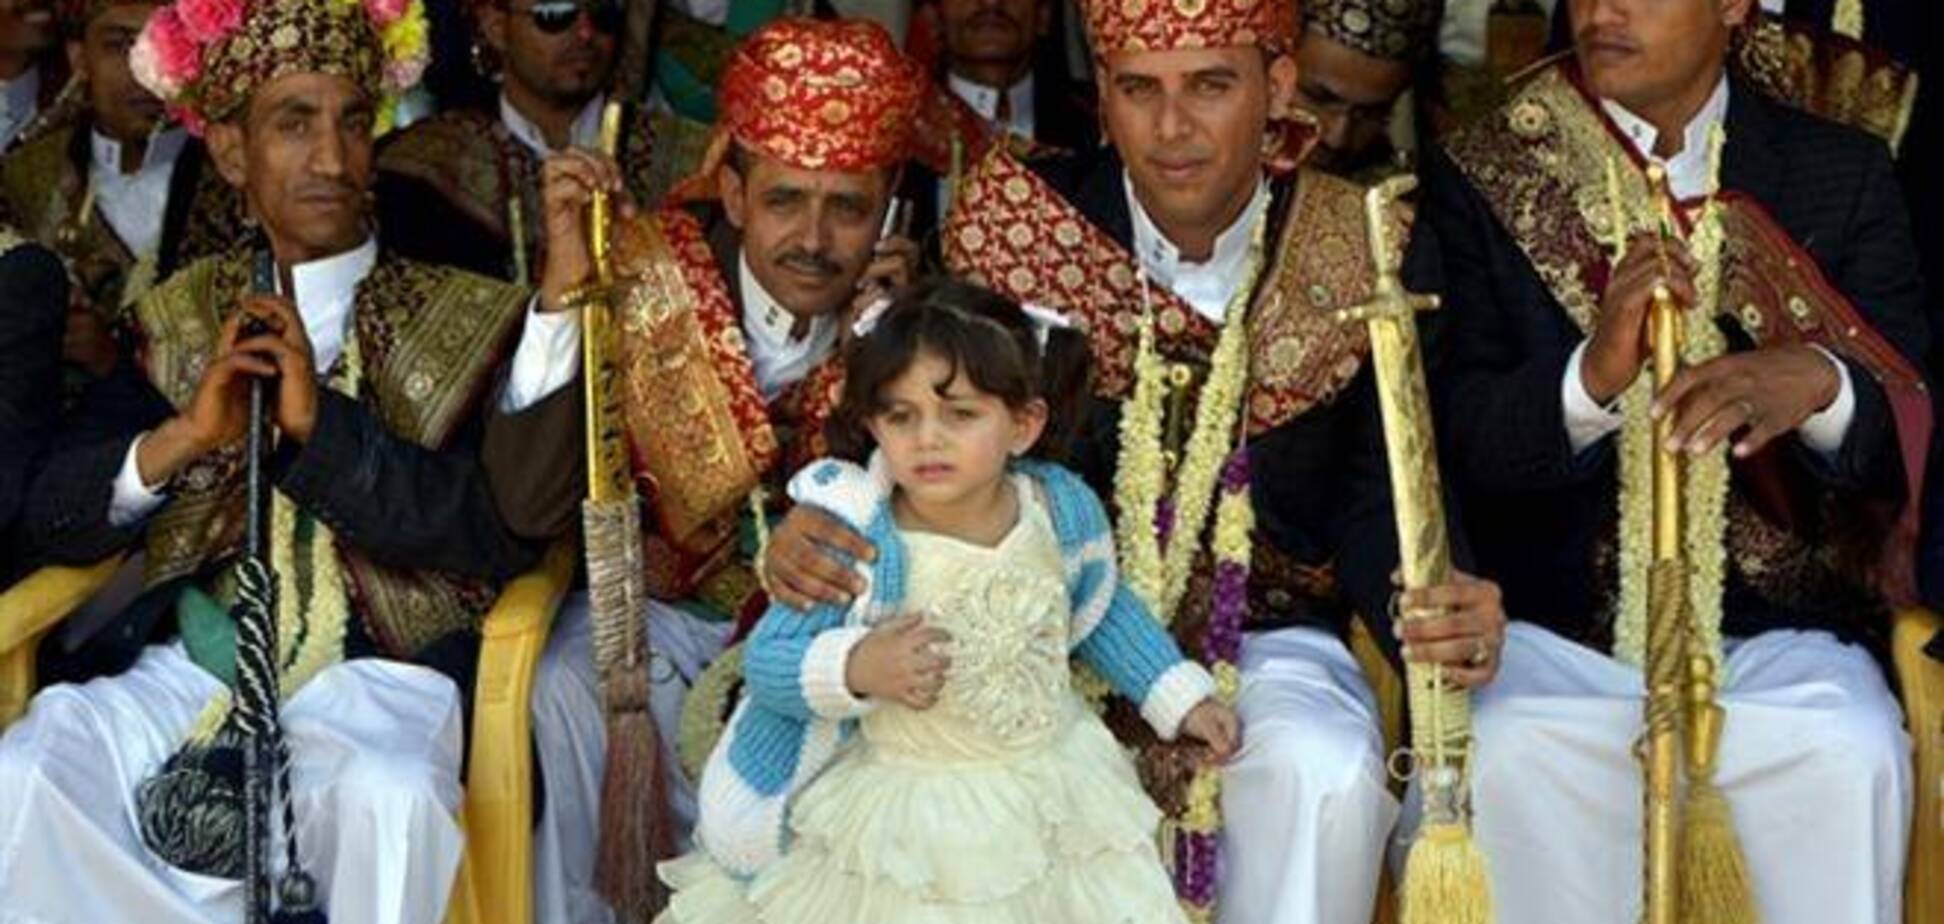 Власти Йемена впервые запретили выдать замуж 9-летнюю девочку